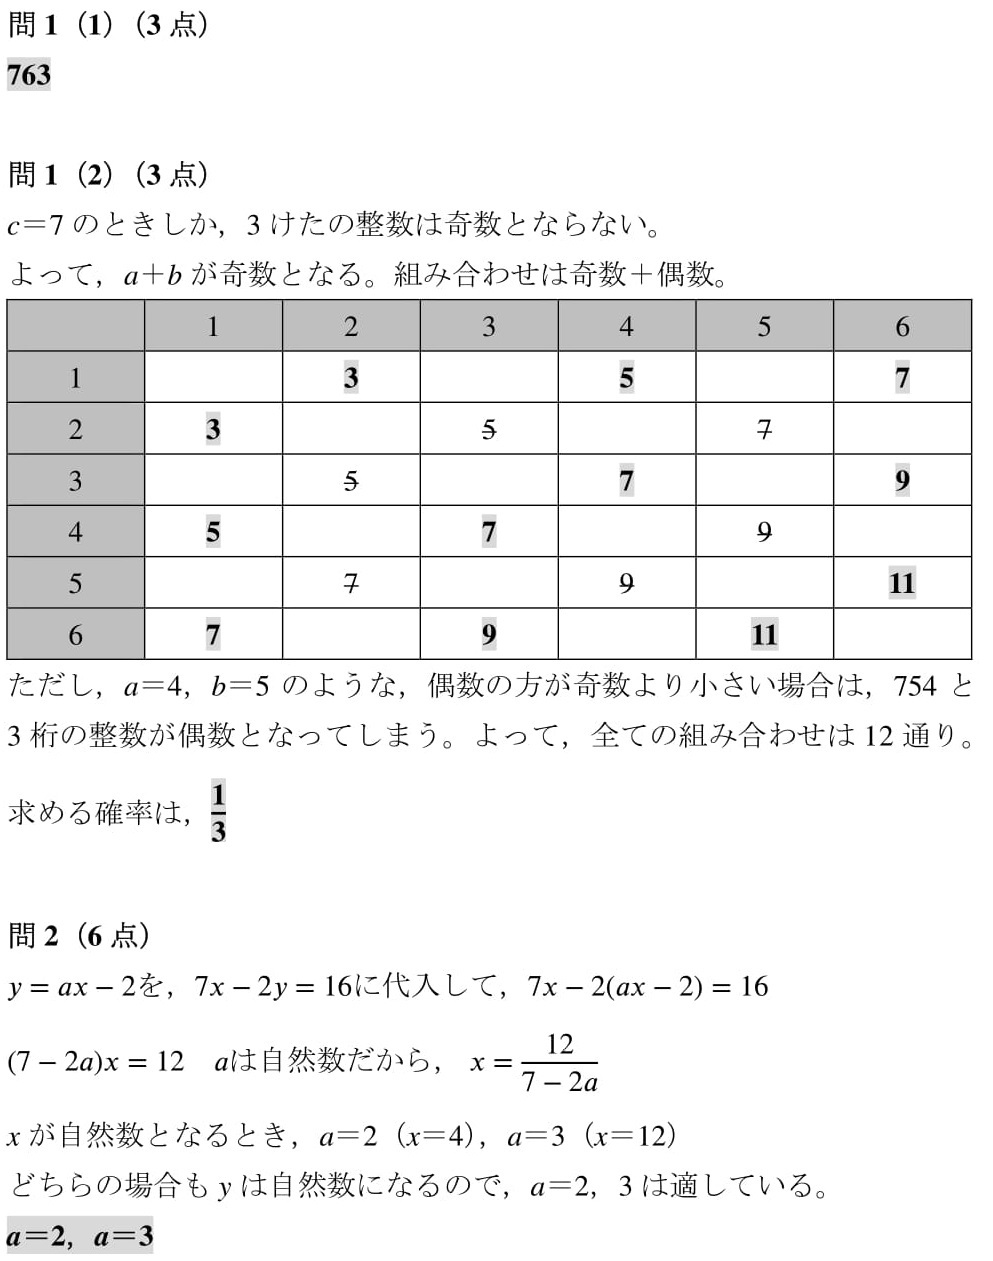 nichidai_keisan2-3.jpg